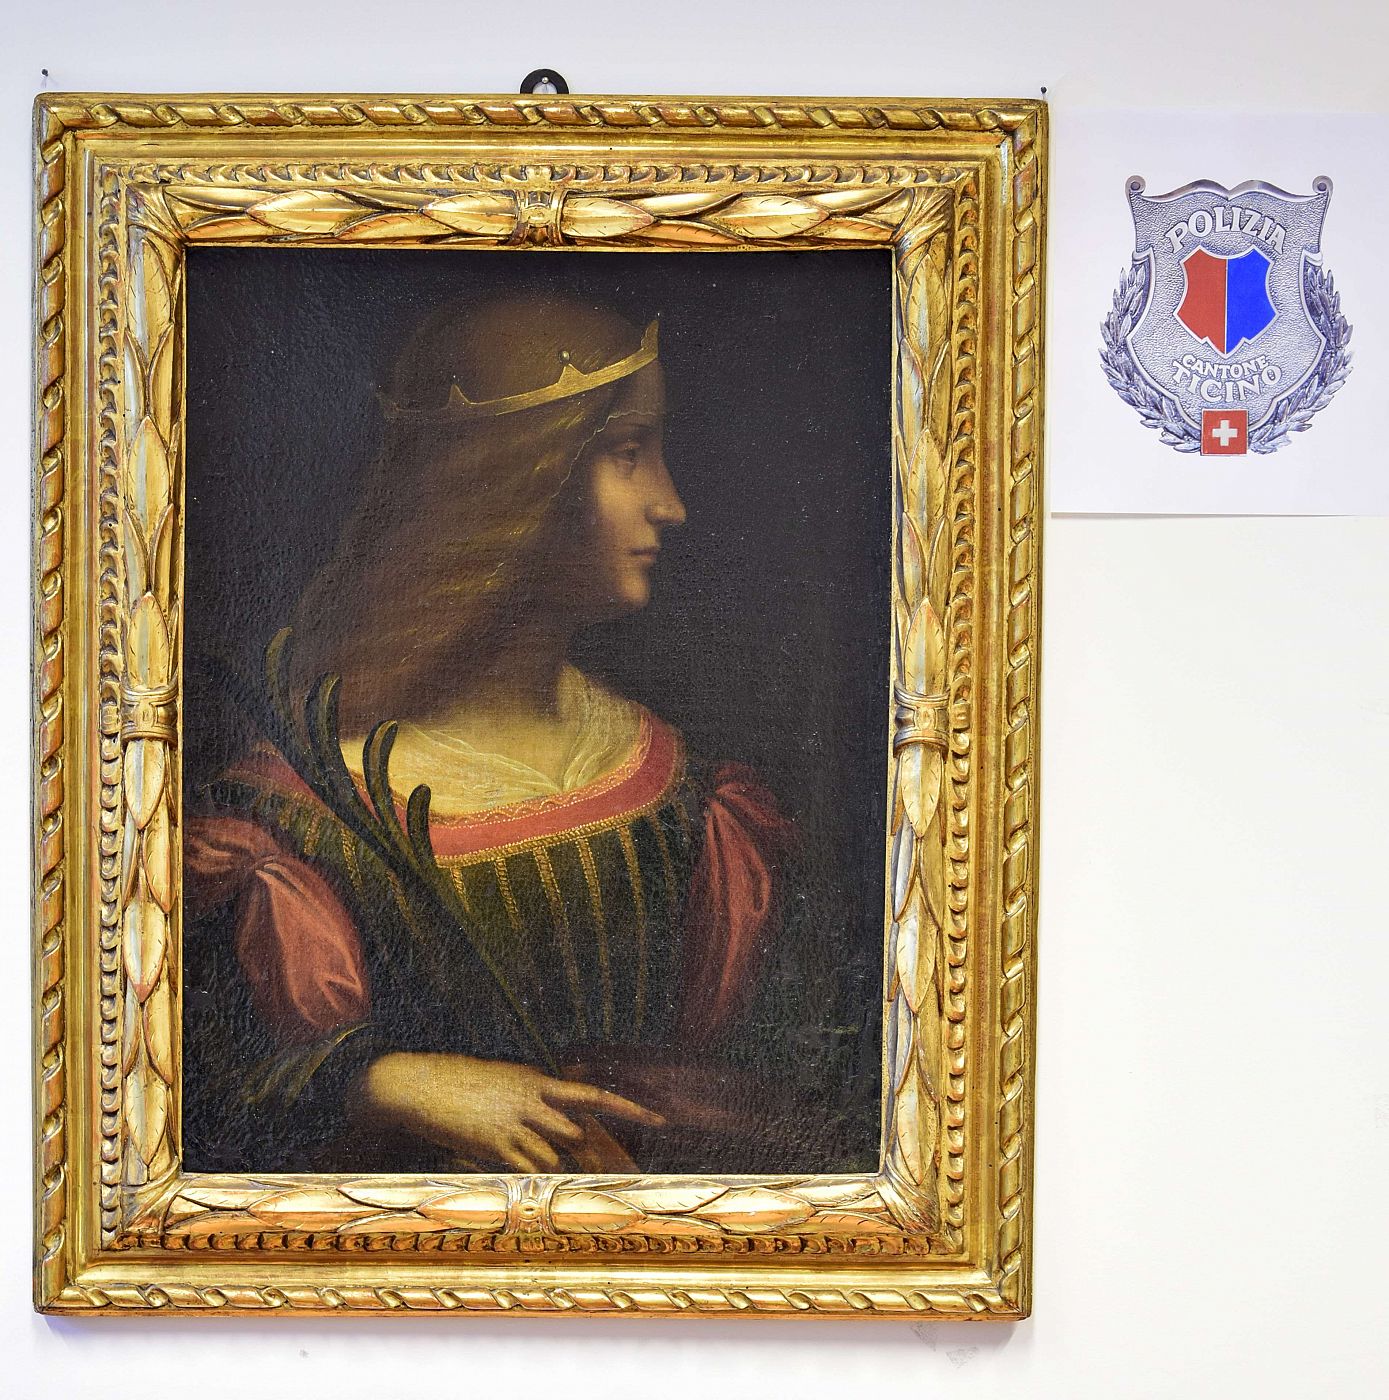 La pintura atribuida a Leonardo da Vinci